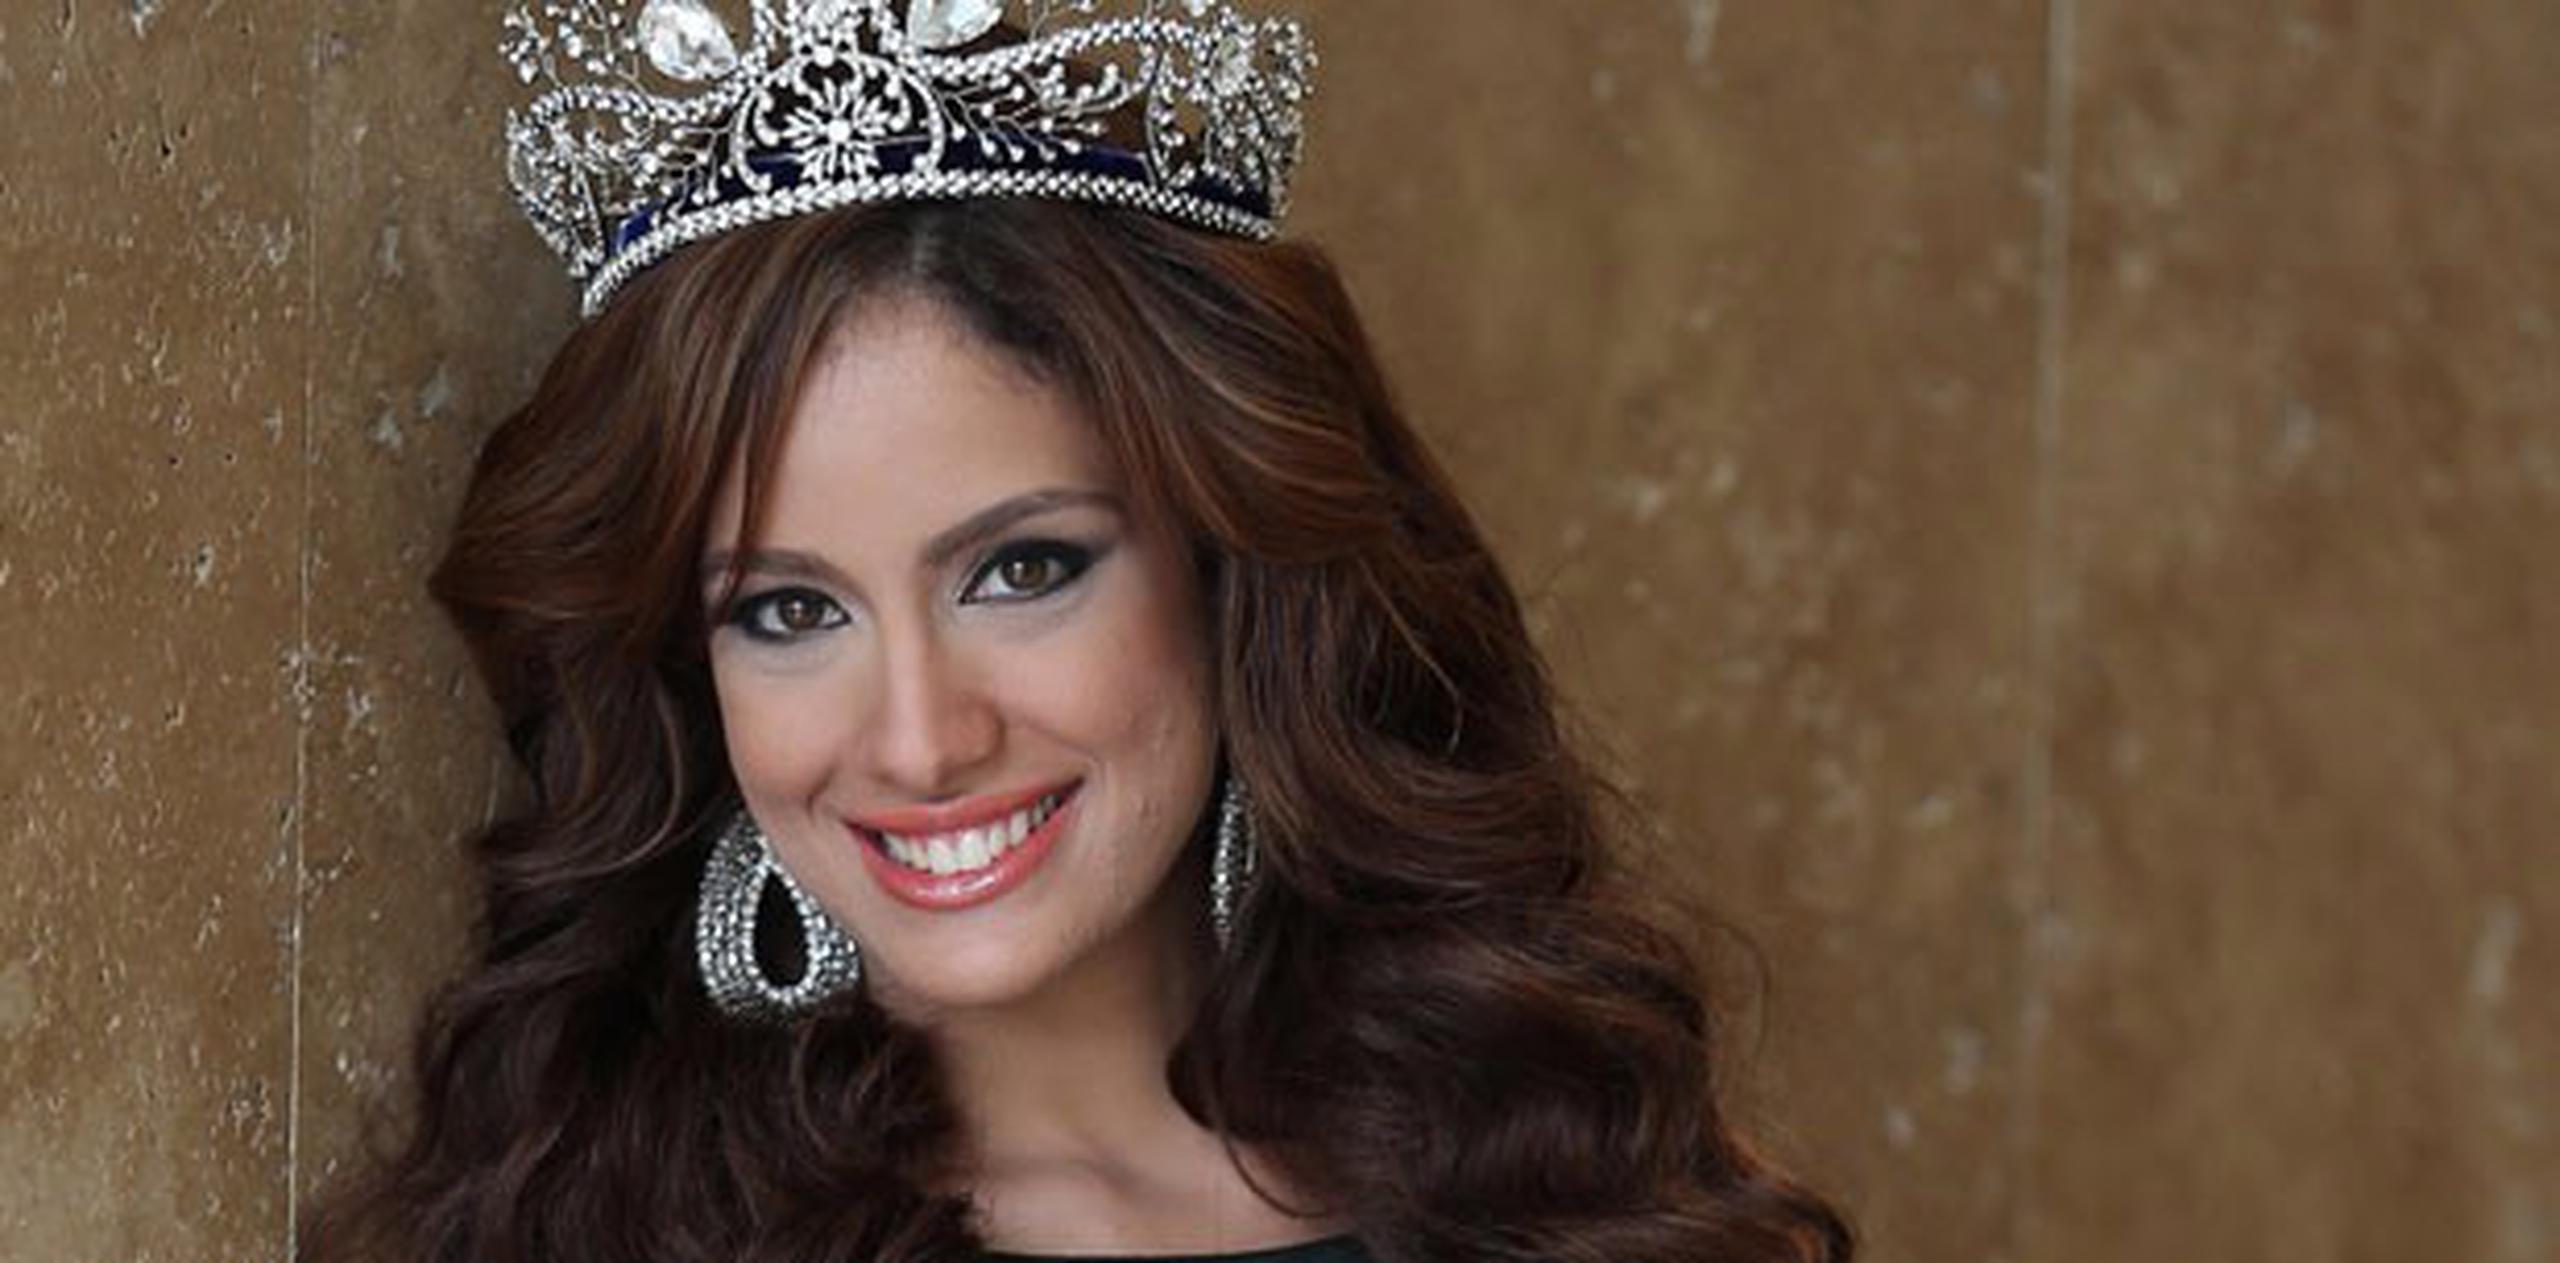 La reina actual, la boricua Aleyda Ortiz, participará como presentadora de contenido para las redes sociales. (Suministrada)